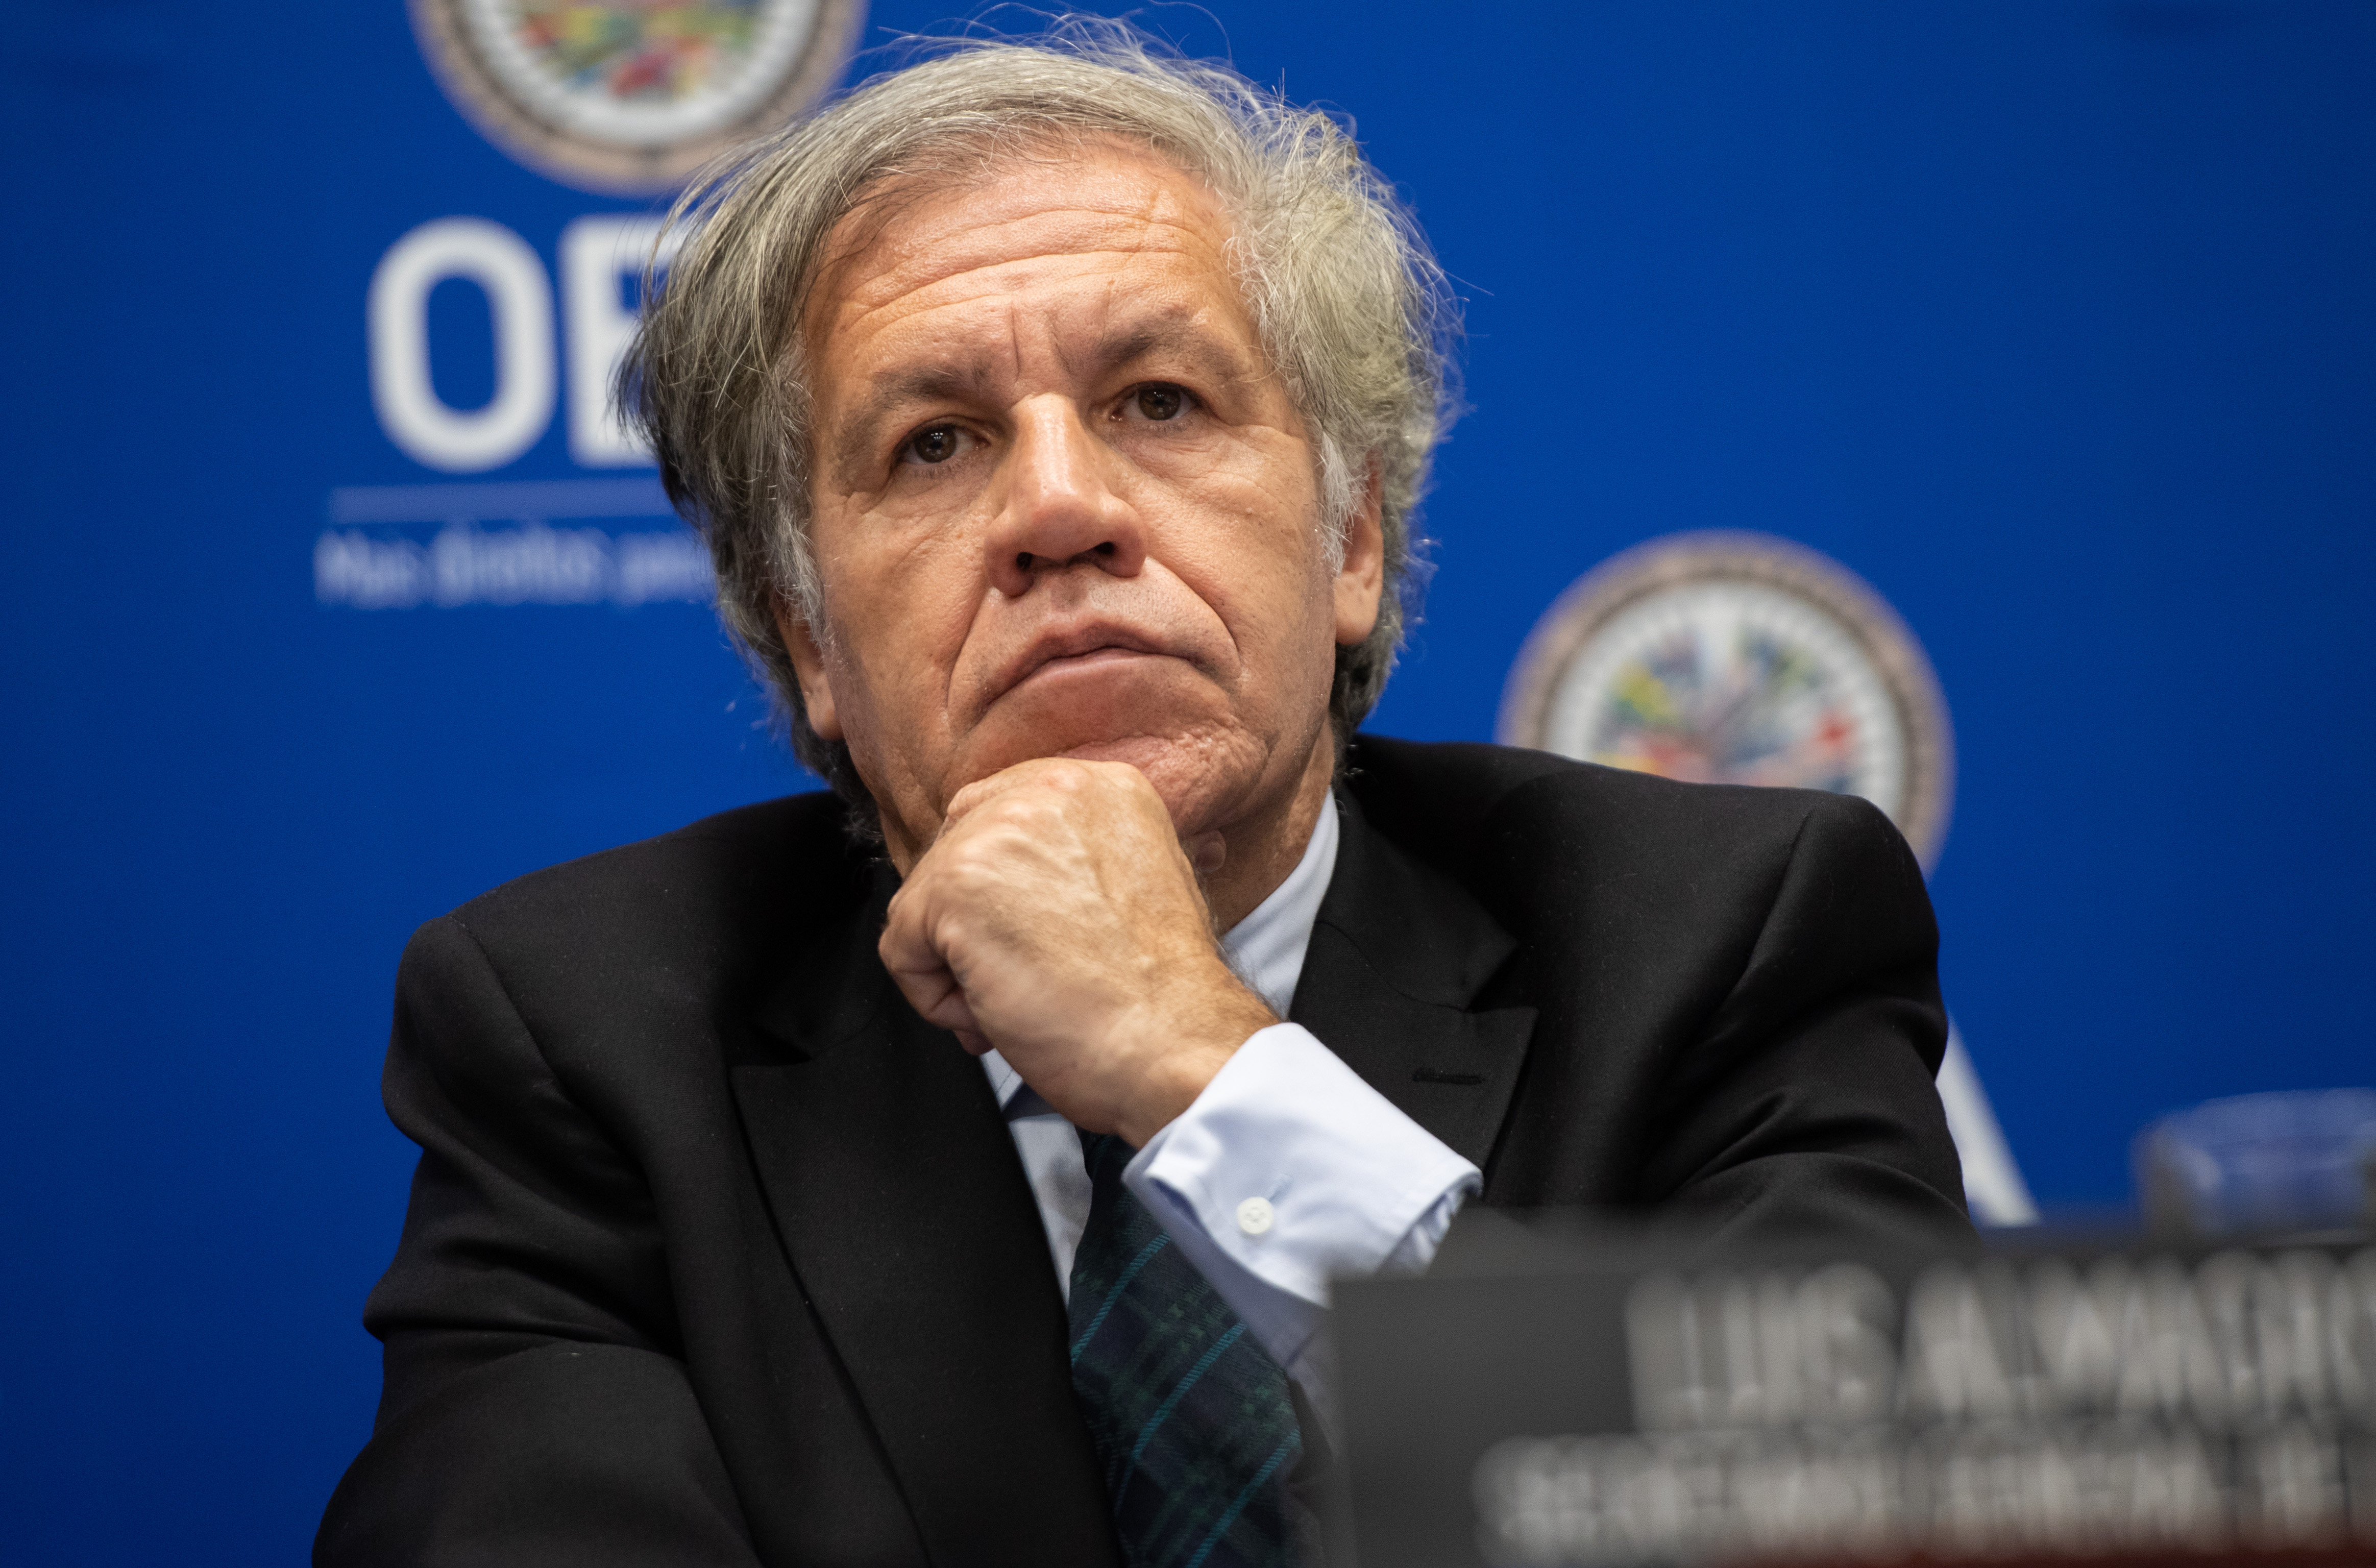 EEUU apoya firmemente la reelección de Almagro en la OEA